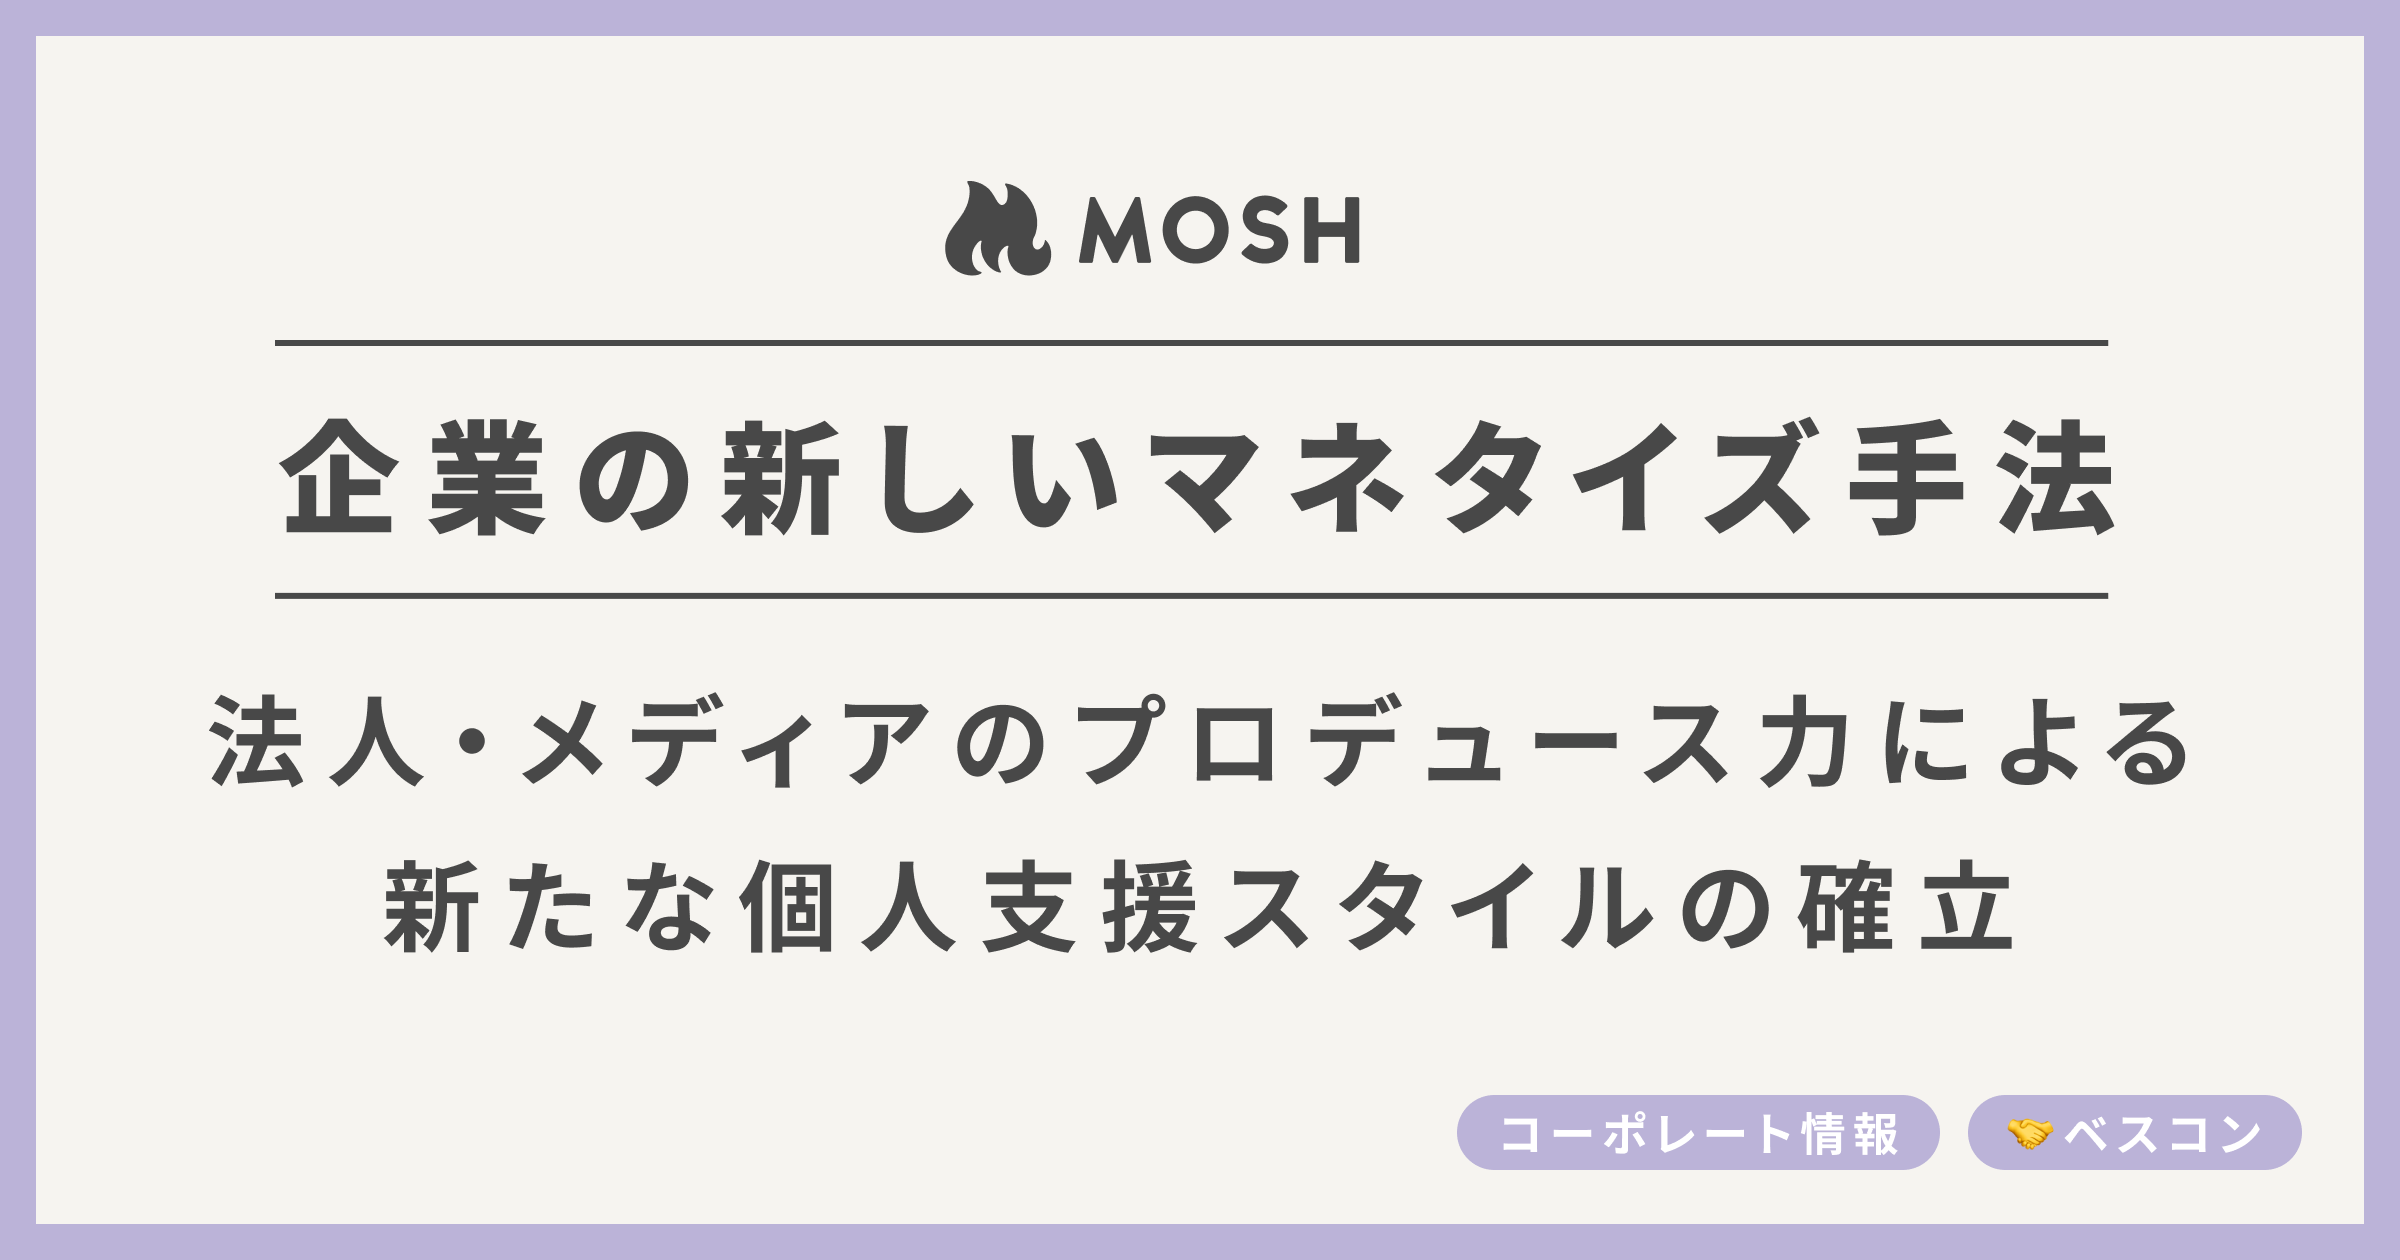 ネットでサービスを売れるMOSH、法人・メディアによる新たなマネタイズ手法の確立！ | MOSH Magazine